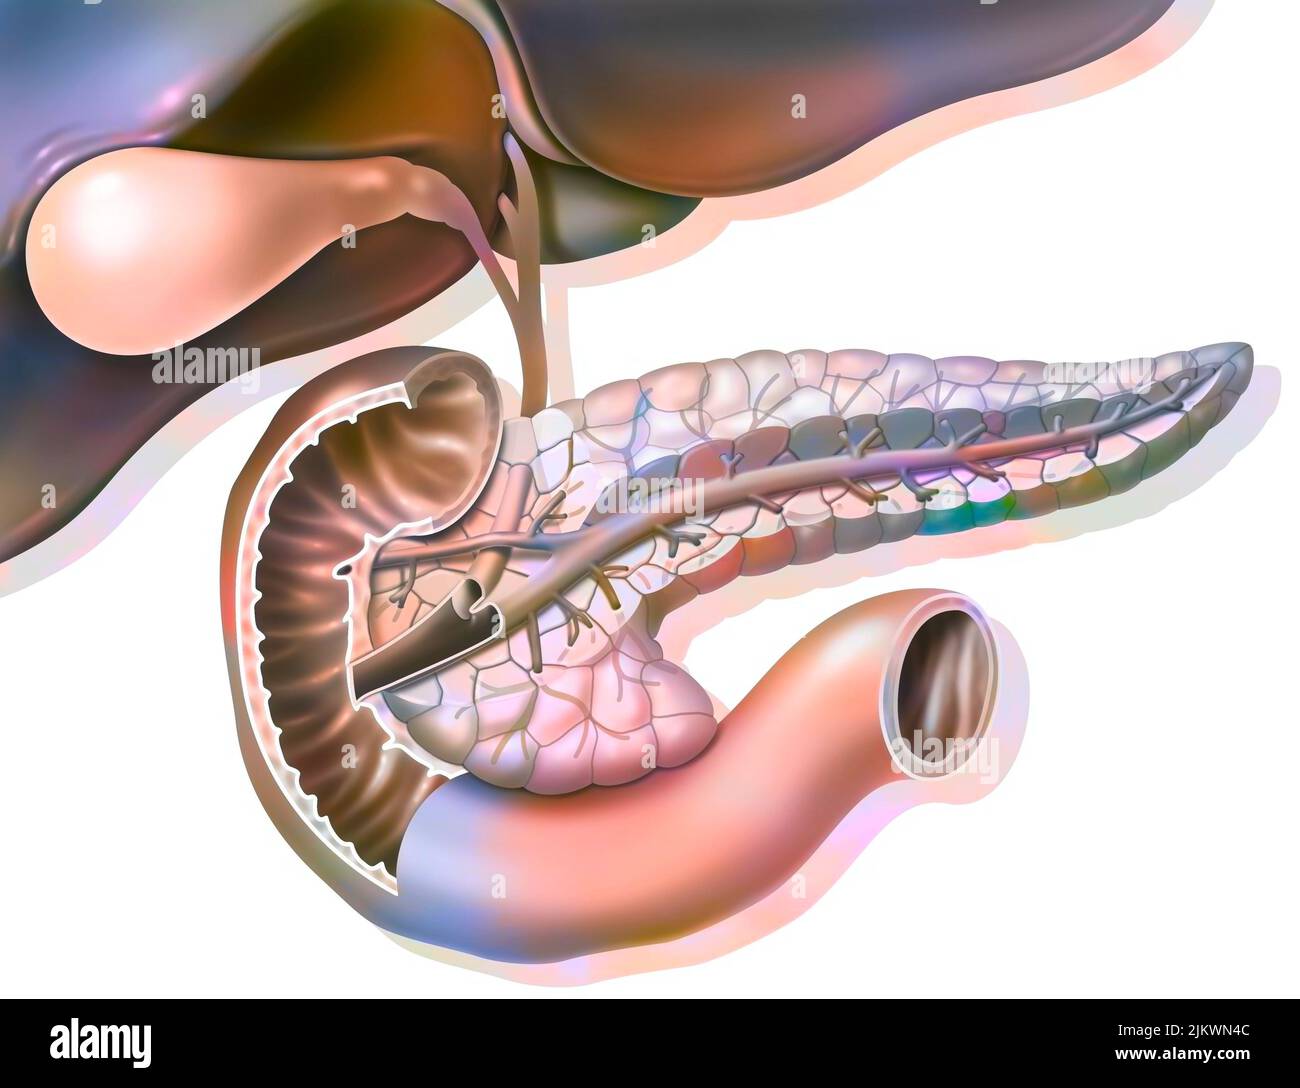 Schnittanatomie der Bauchspeicheldrüse mit Gallenblase und gemeinem Gallengang. Stockfoto